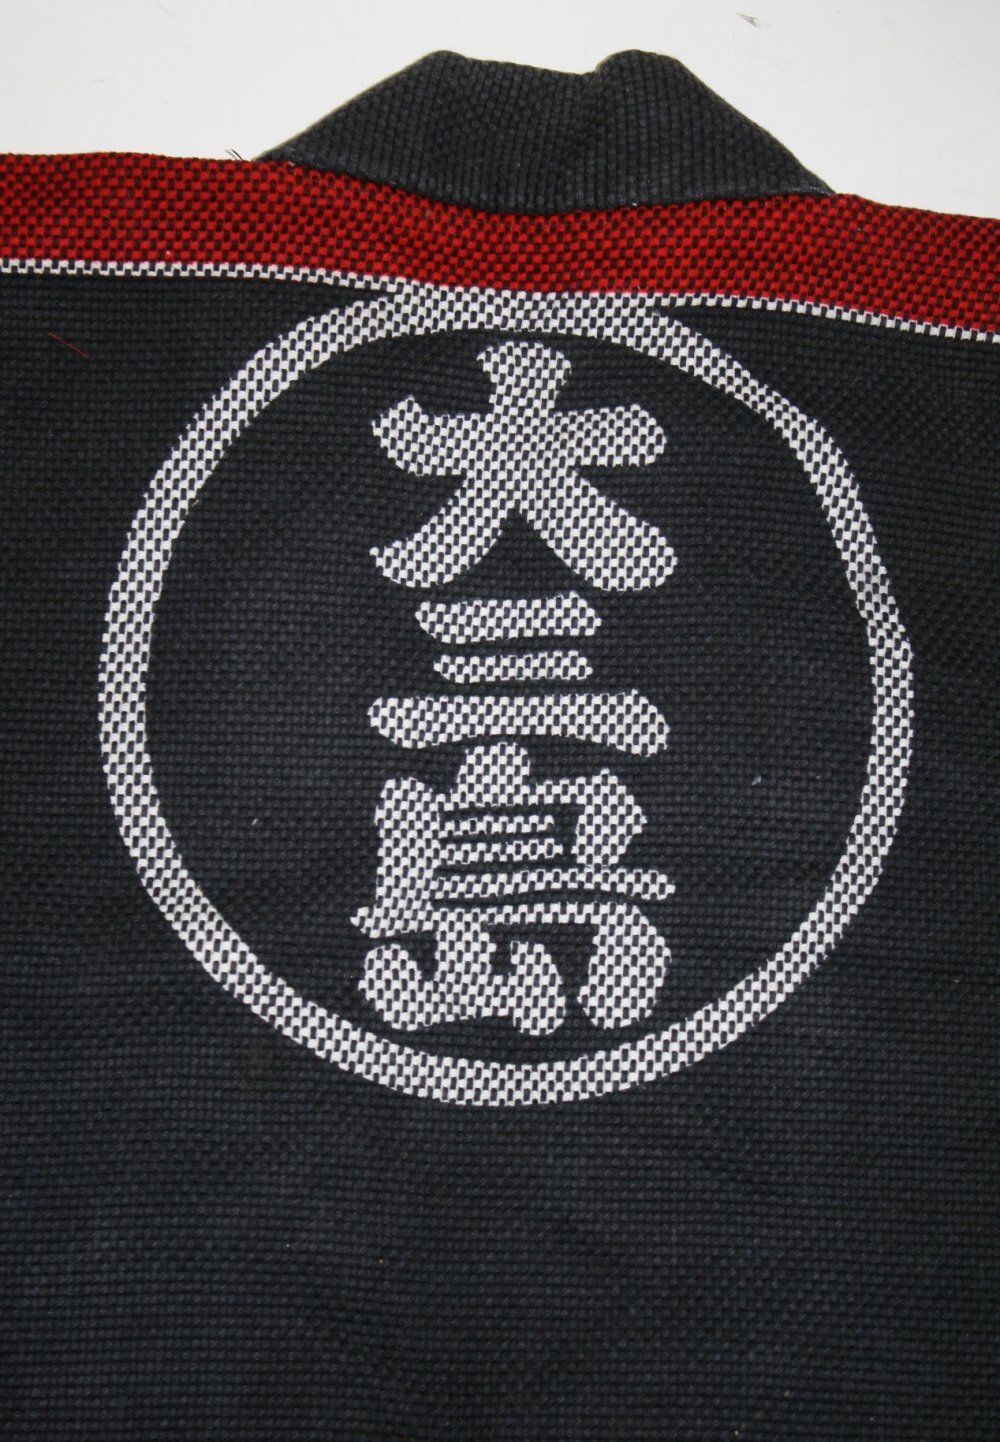 hikeshibanten,japanese fireman jacket